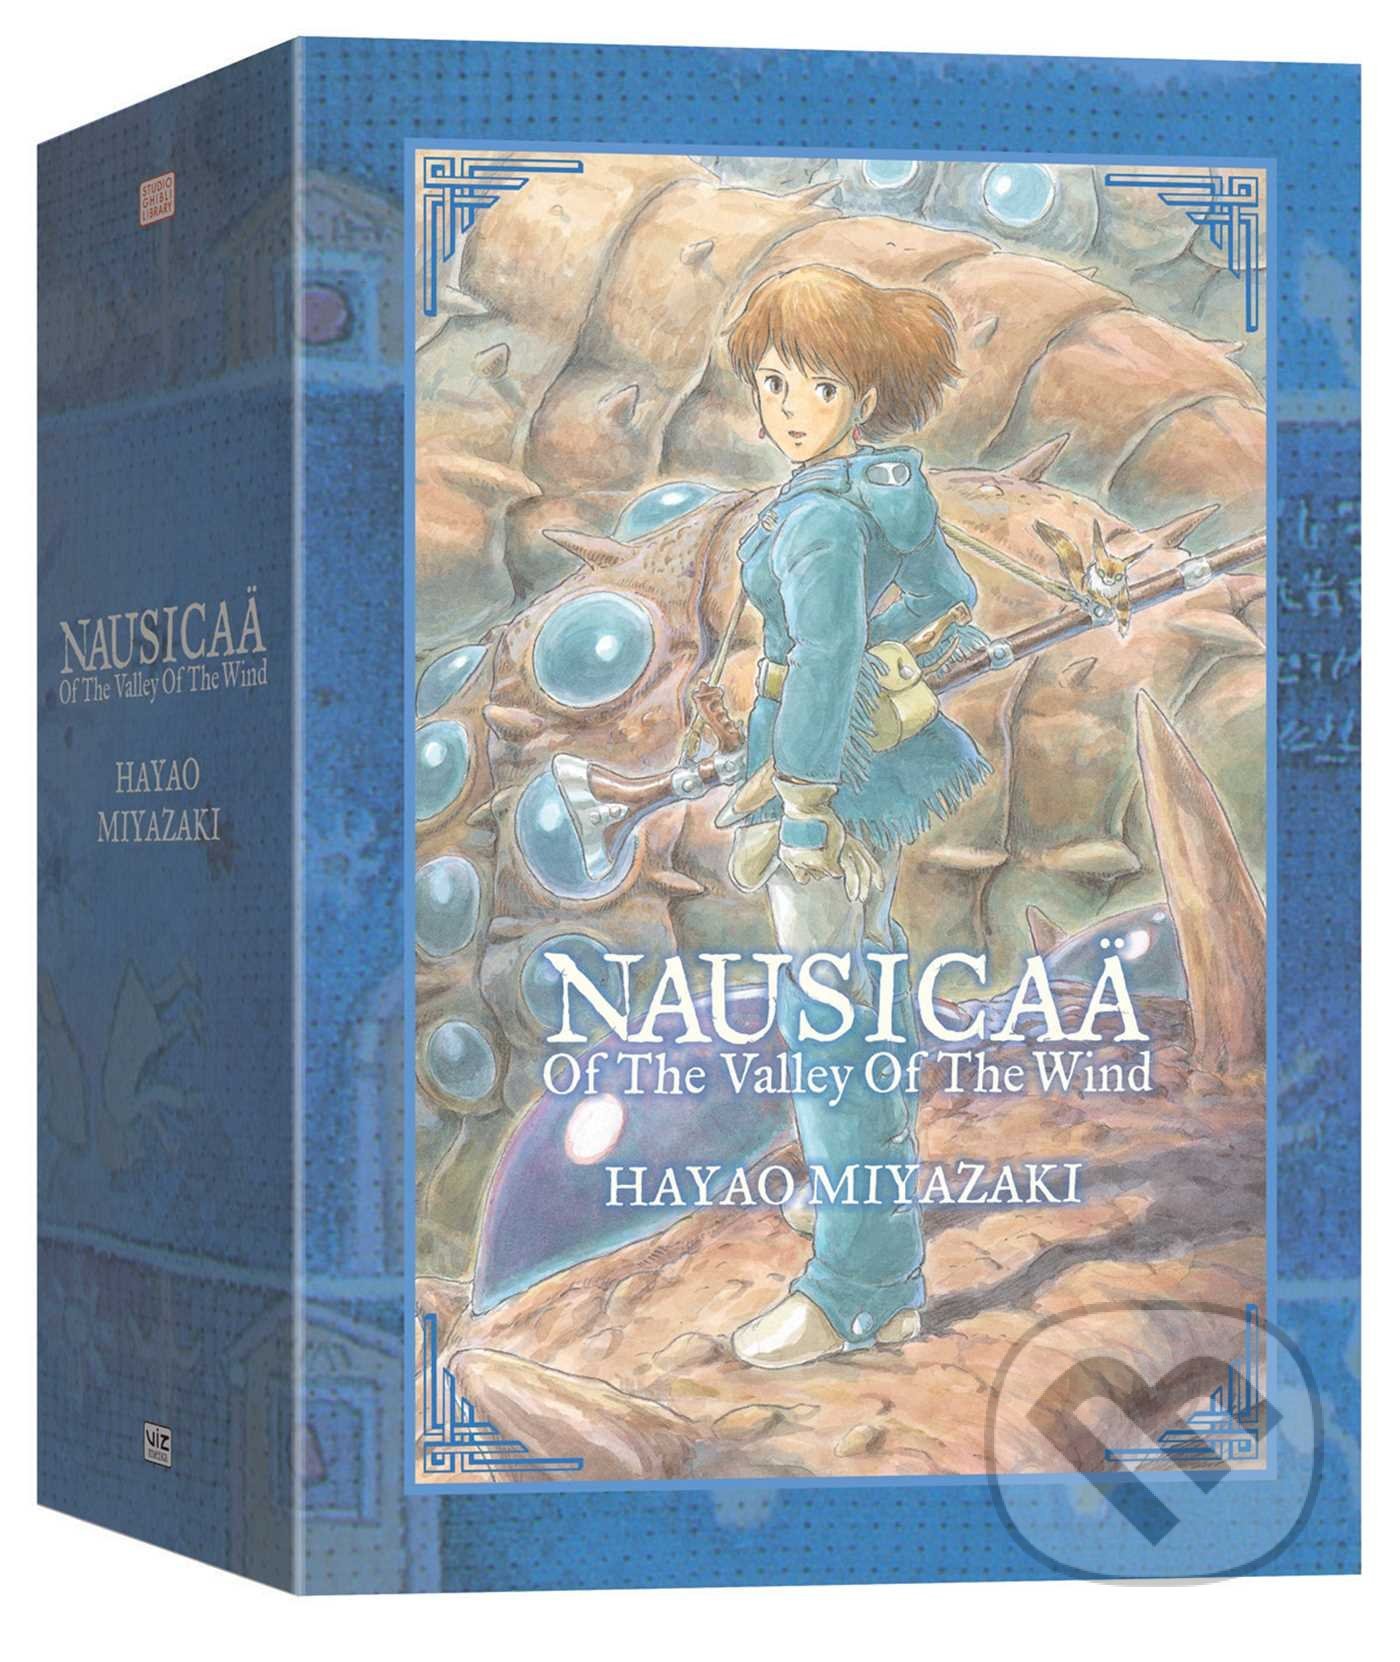 Nausicaä of the Valley of the Wind Box Set - Hayao Miyazaki, Viz Media, 2012